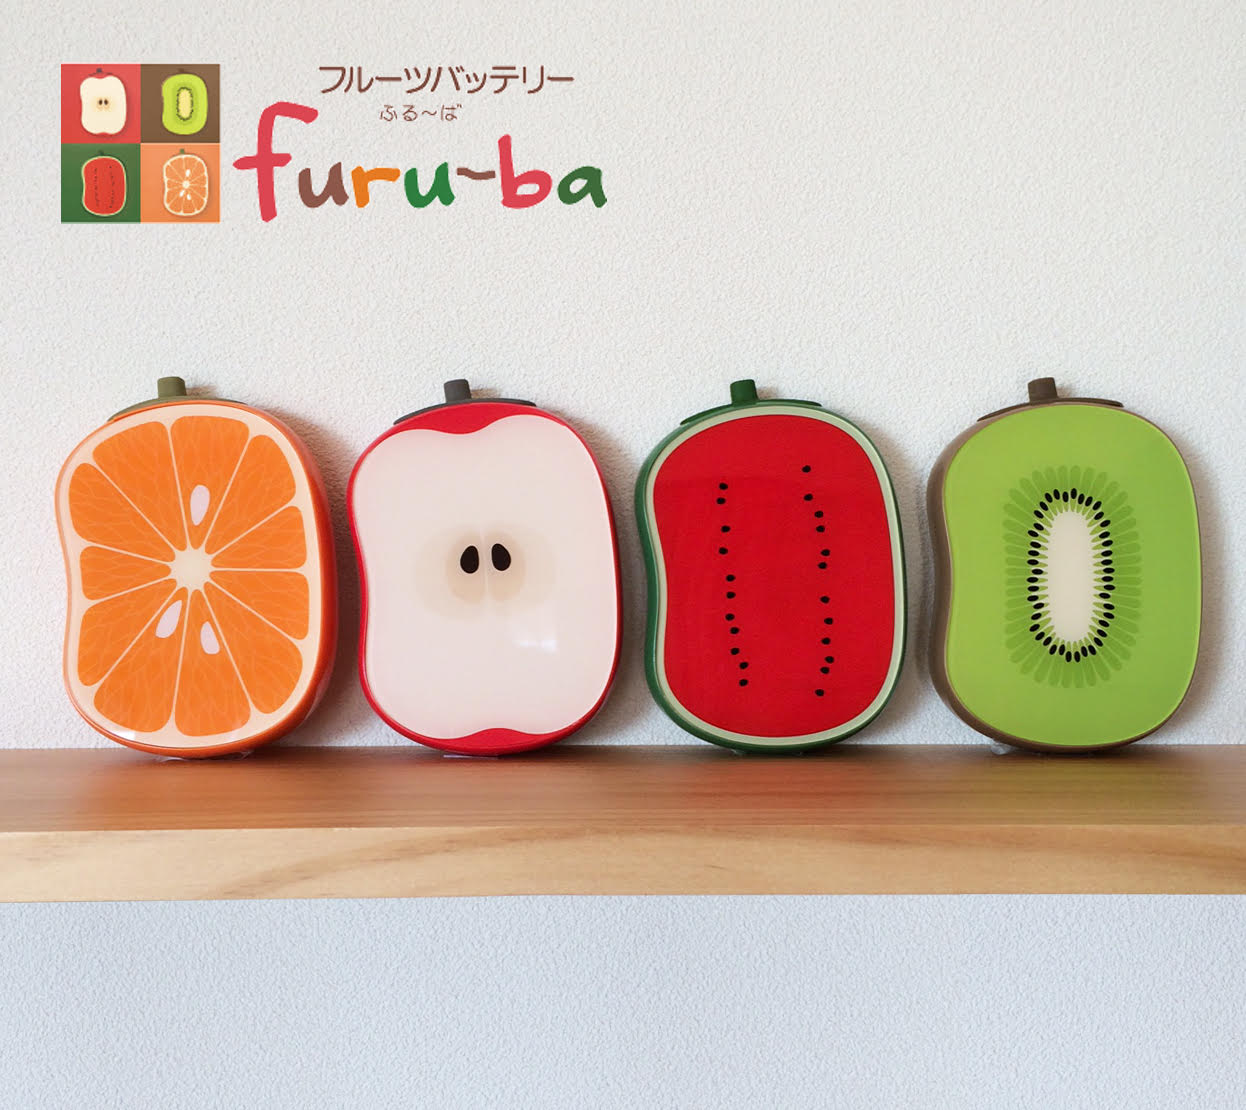 本物のフルーツみたいな可愛いモバイルバッテリーが登場 17年2月3日 エキサイトニュース